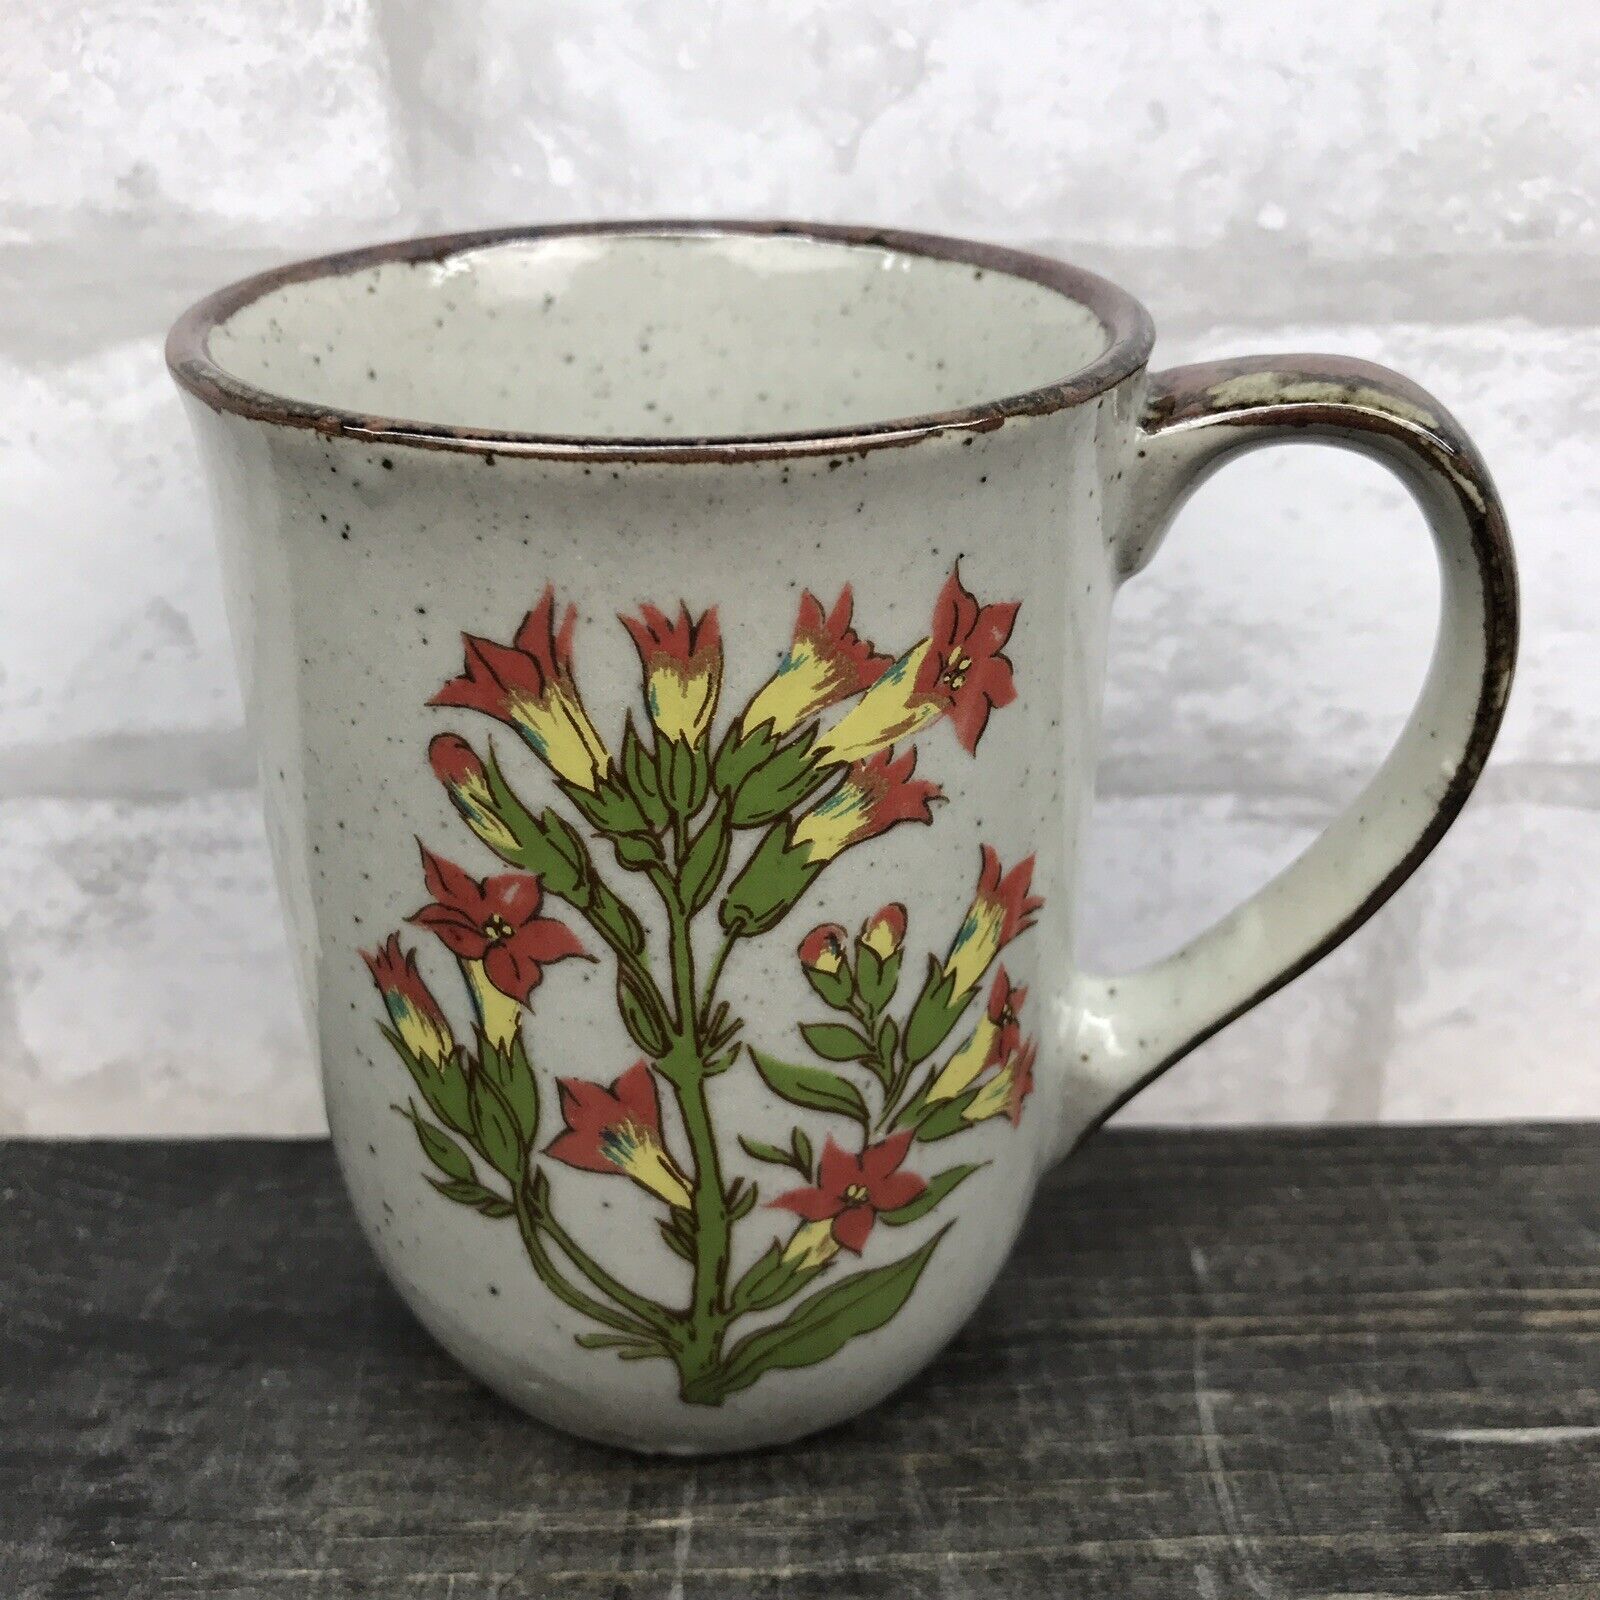 Vtg Speckled Pottery Mug 10oz Double sided floral print Brown trim